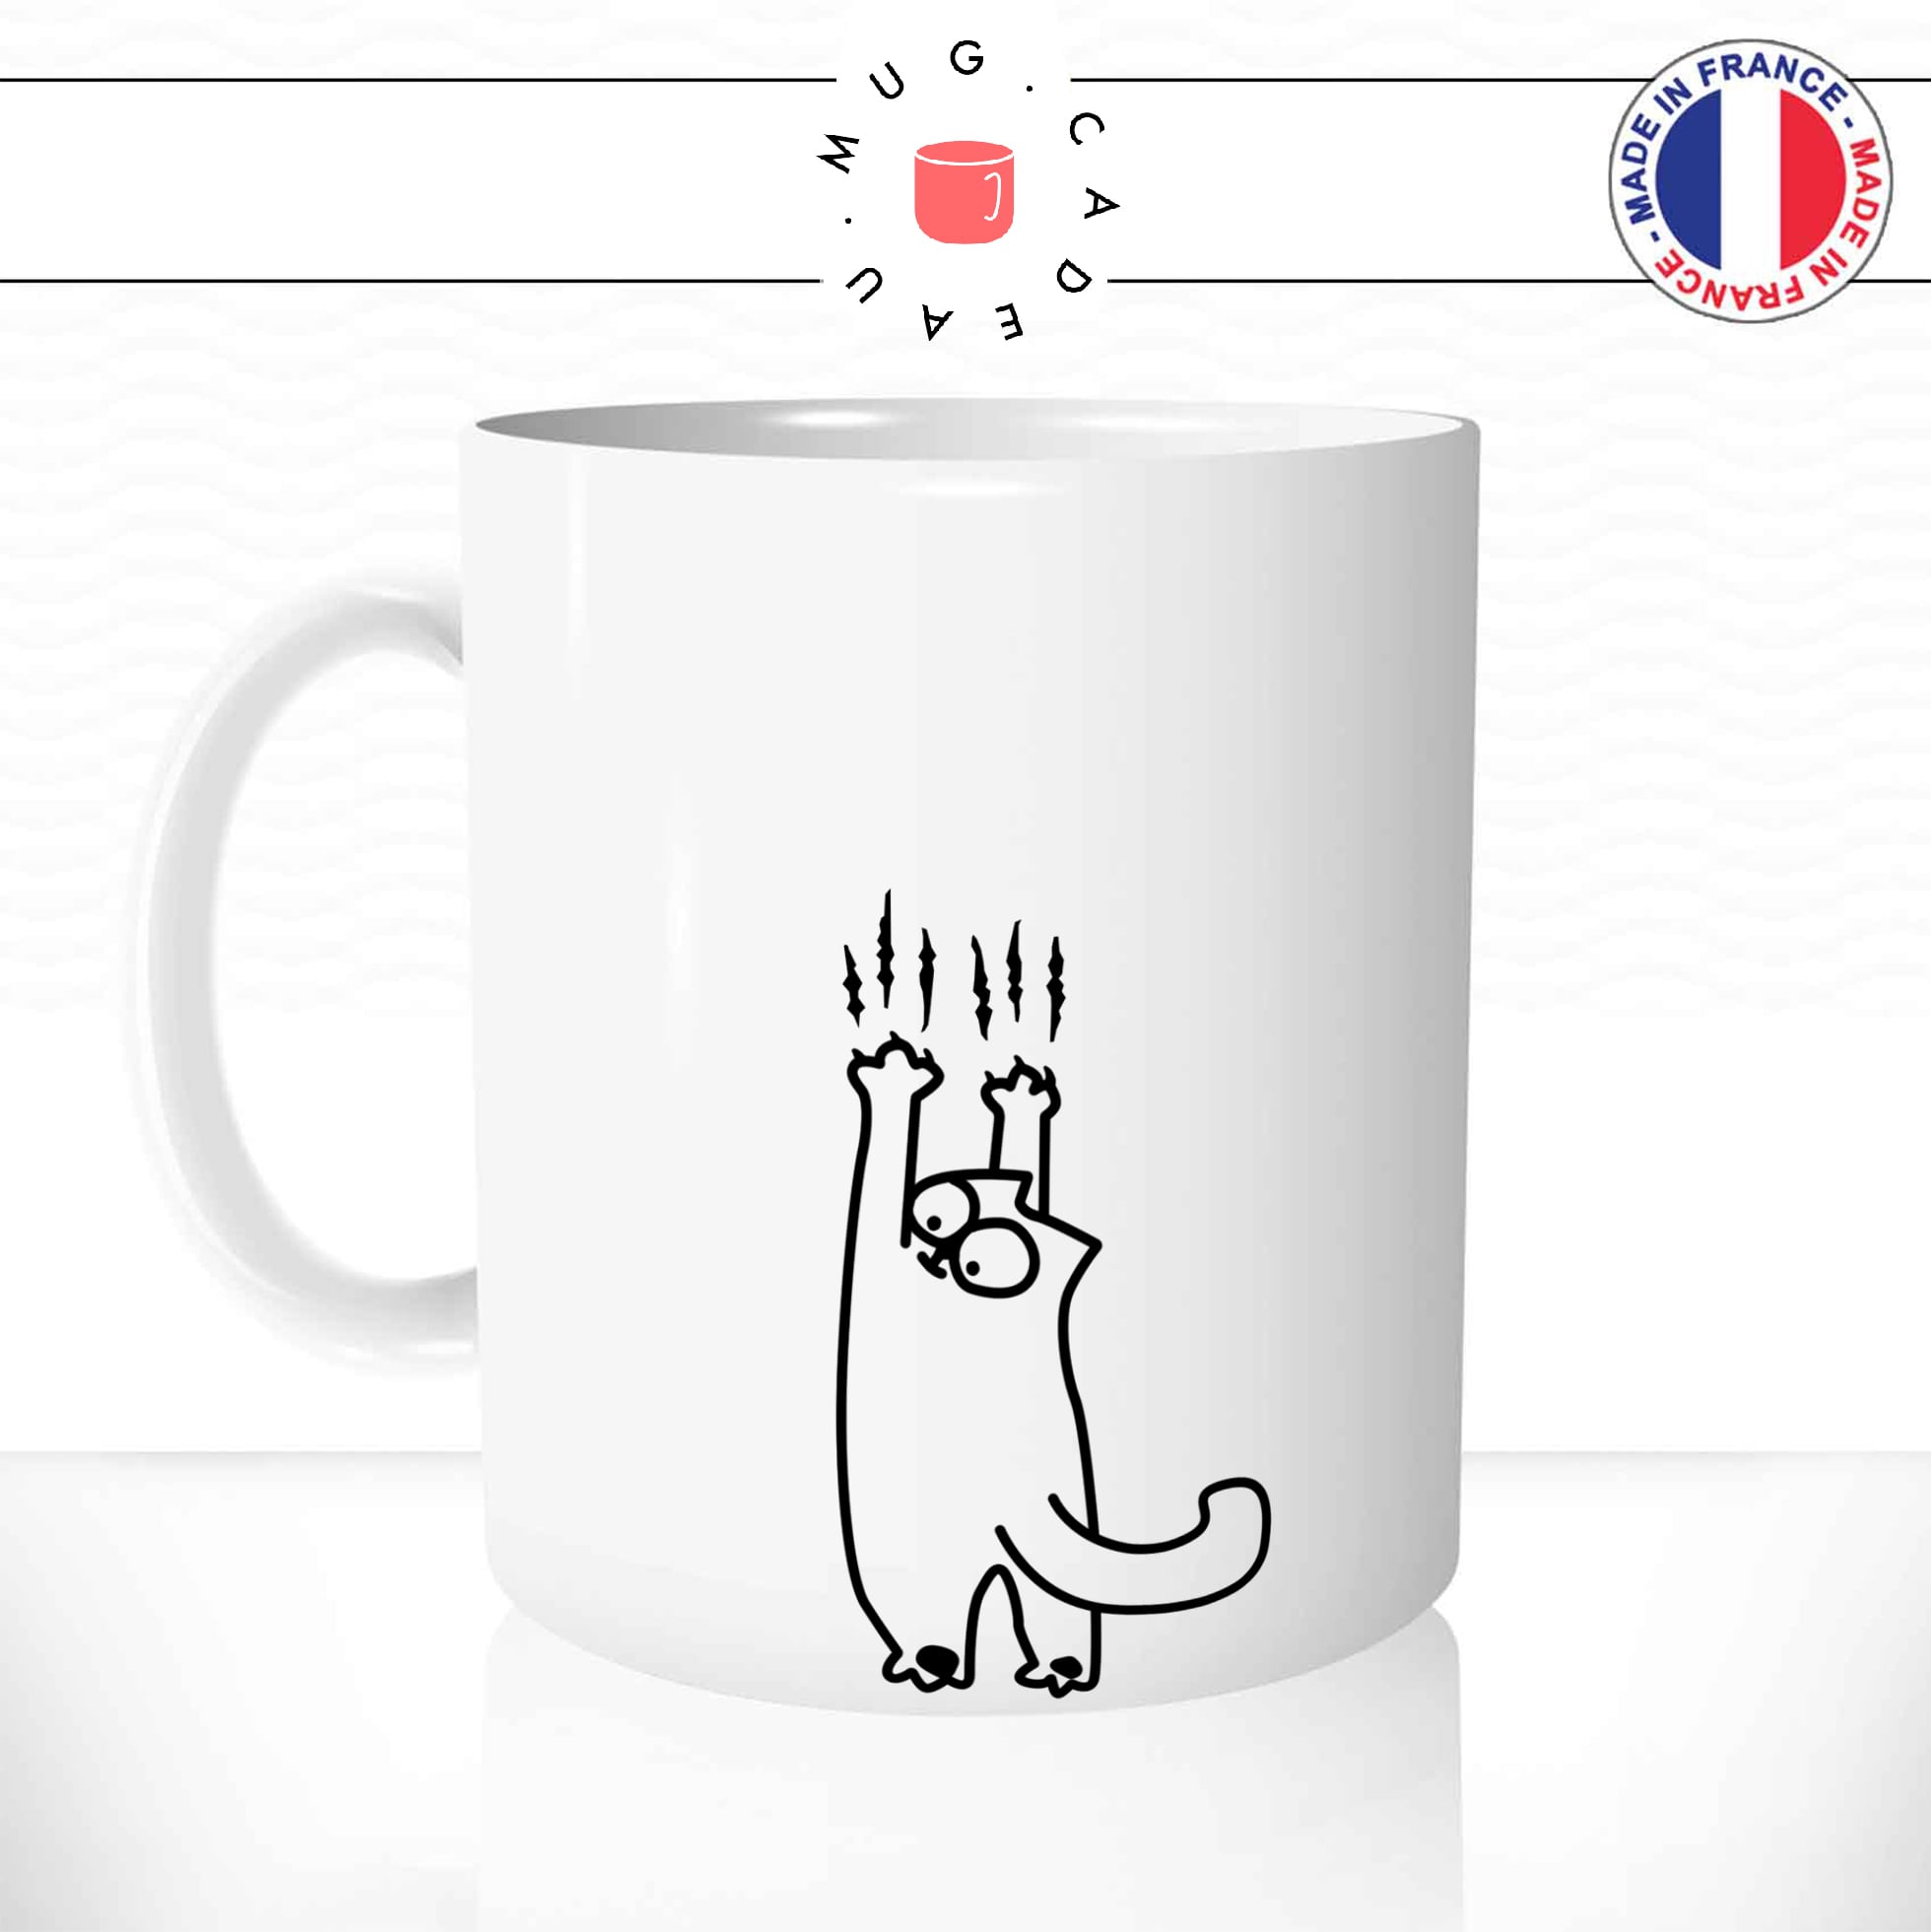 mug-tasse-chat-chaton-griffes-betises-drole-humour-mignon-dessin-animal-cafe-thé-idée-cadeau-original-1